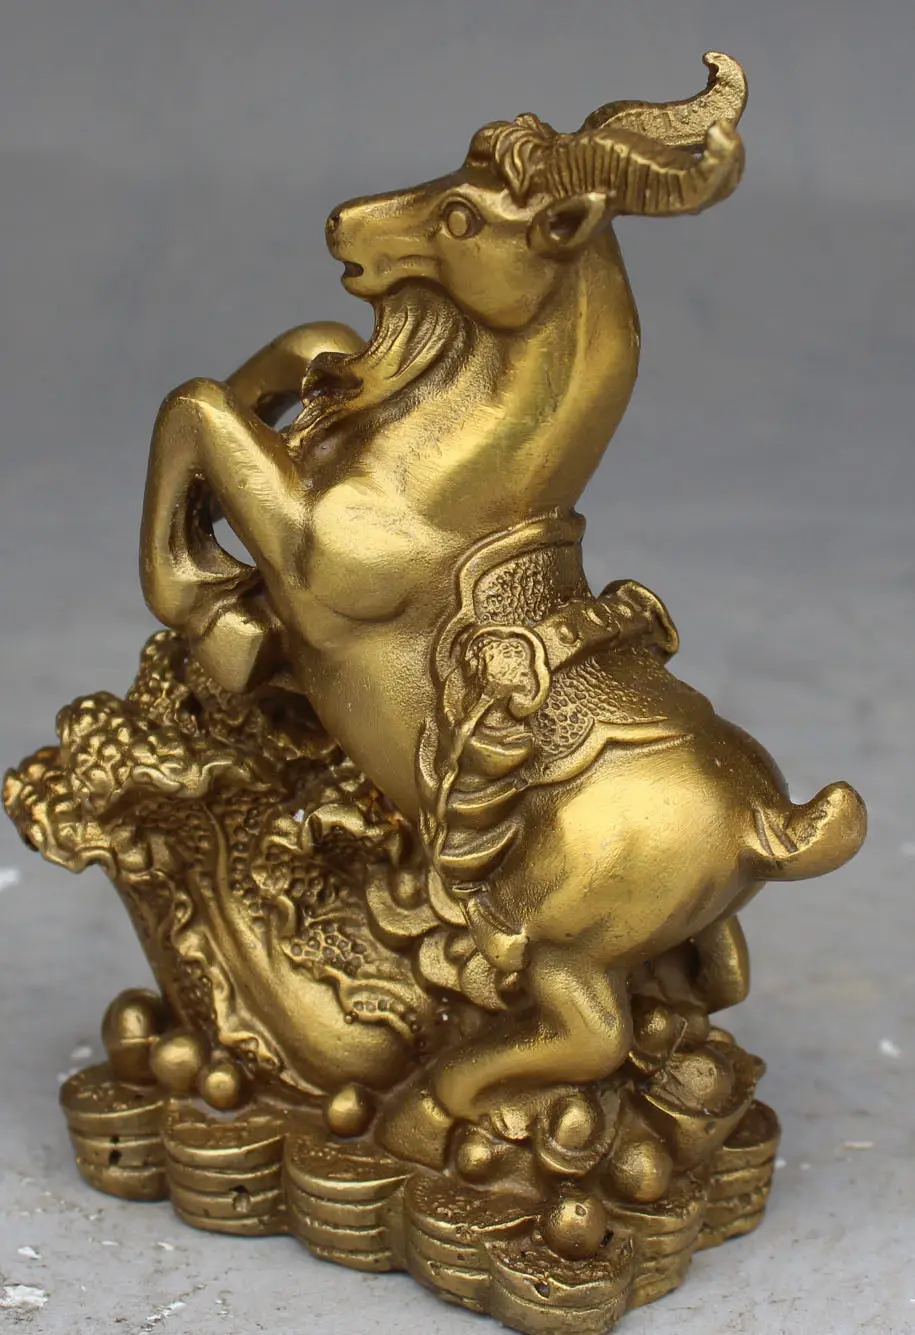 Китайская бронзовая статуэтка "Овечка капуста" для привлечения удачи в Фэн-Шуй.